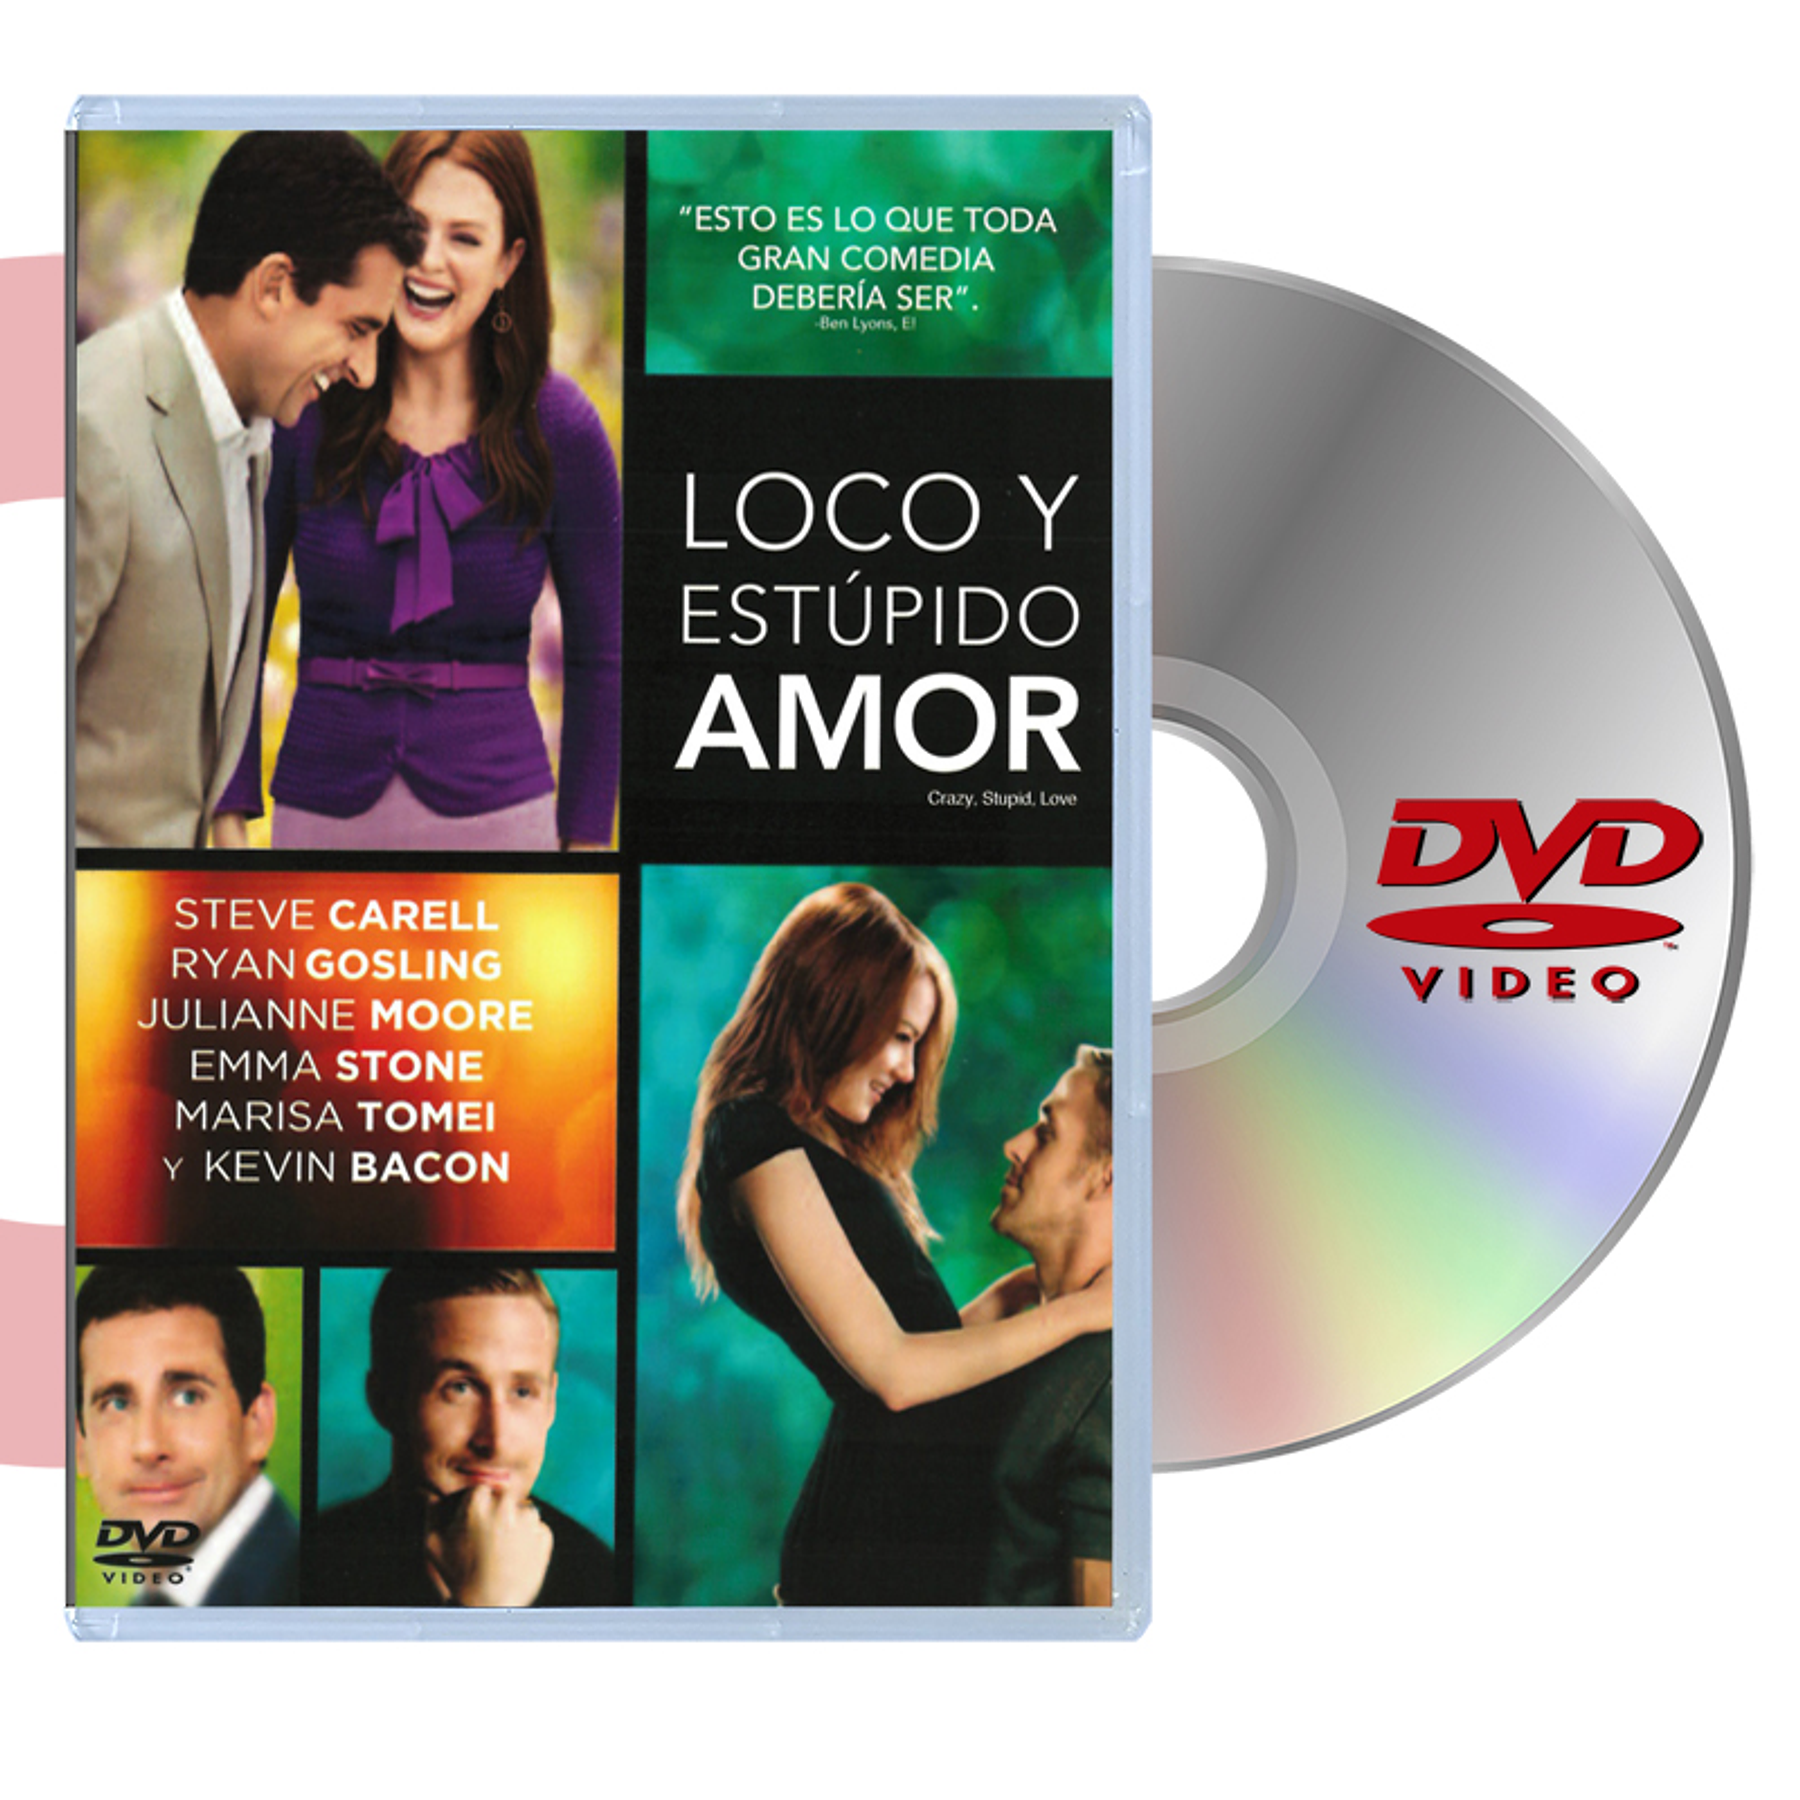 DVD LOCO Y ESTUPIDO AMOR